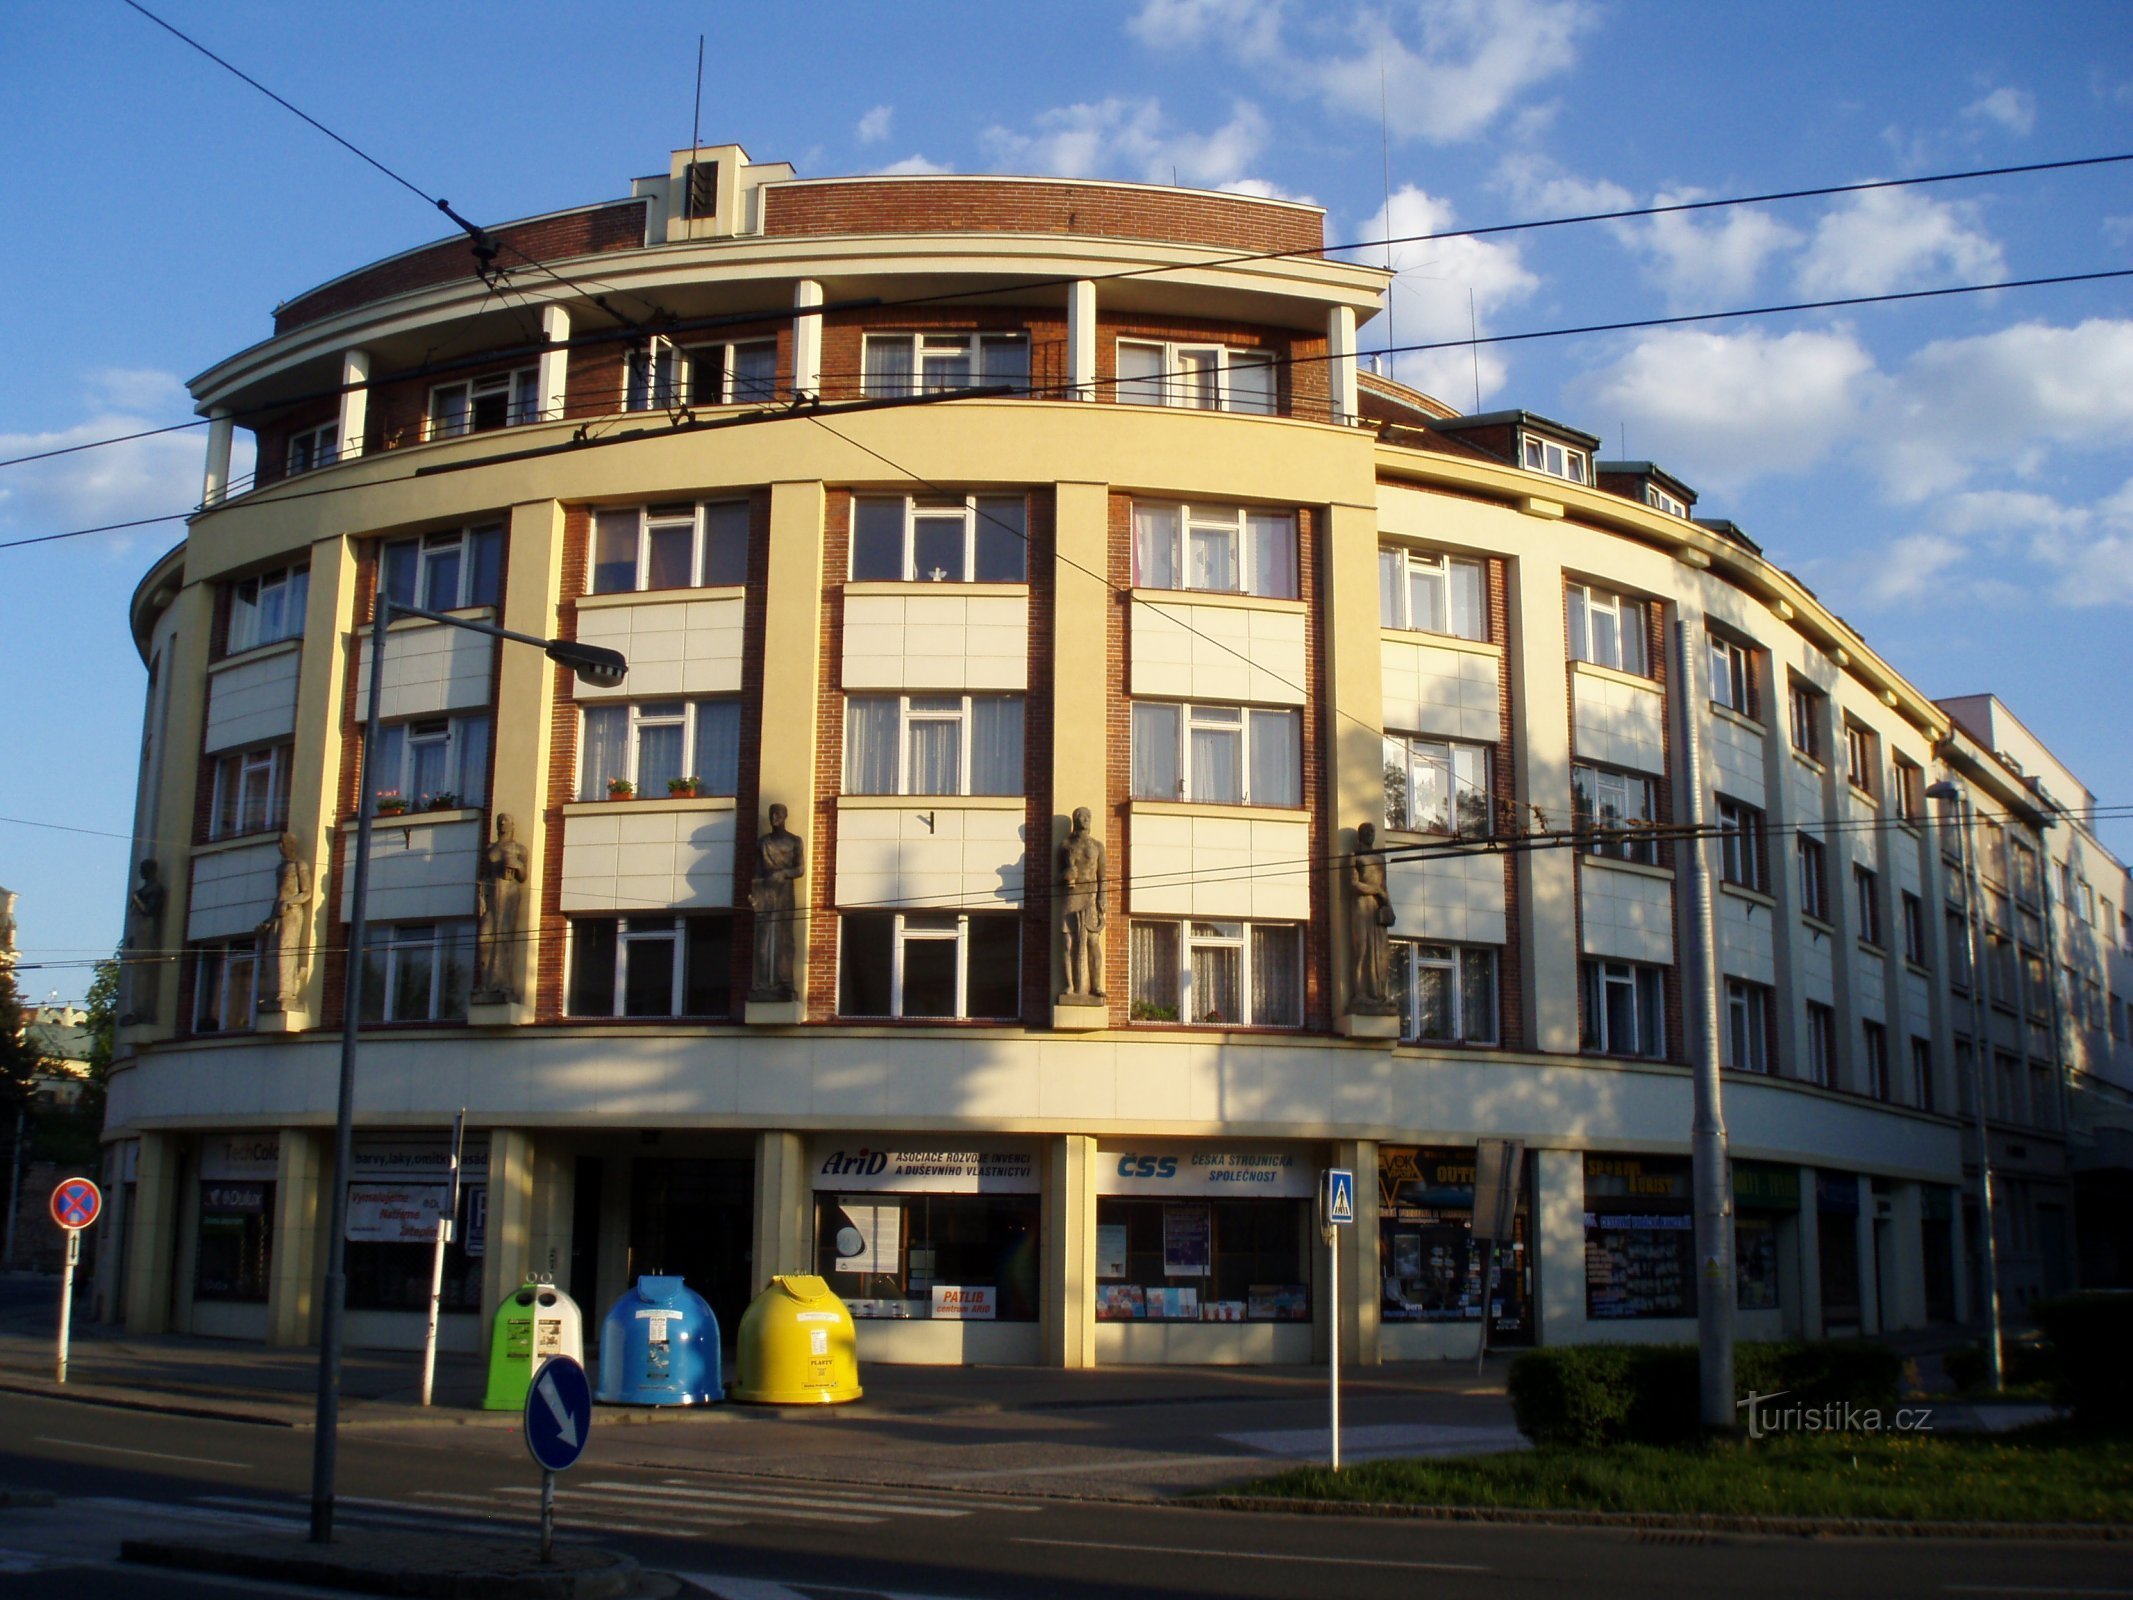 Det første tjekkiske gensidige forsikringsselskab (Hradec Králové, 1.5.2012. maj XNUMX)